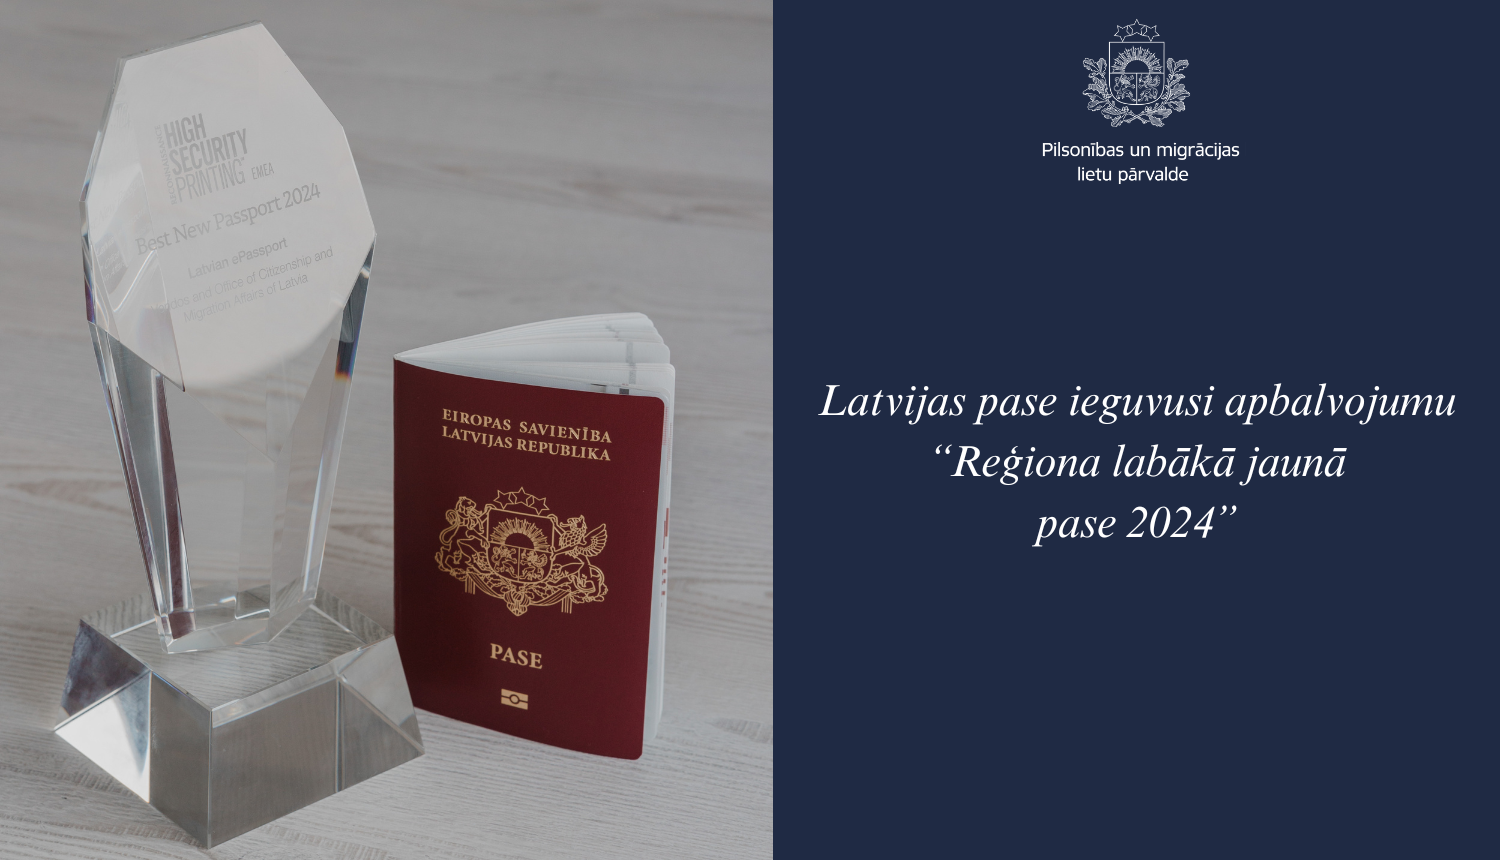 Teksts: latvijas pase ieguvusi apbalvojumu "Reģiona labākā jaunā pase 2024". Pases foto ar Latvijas jauna parauga pasi